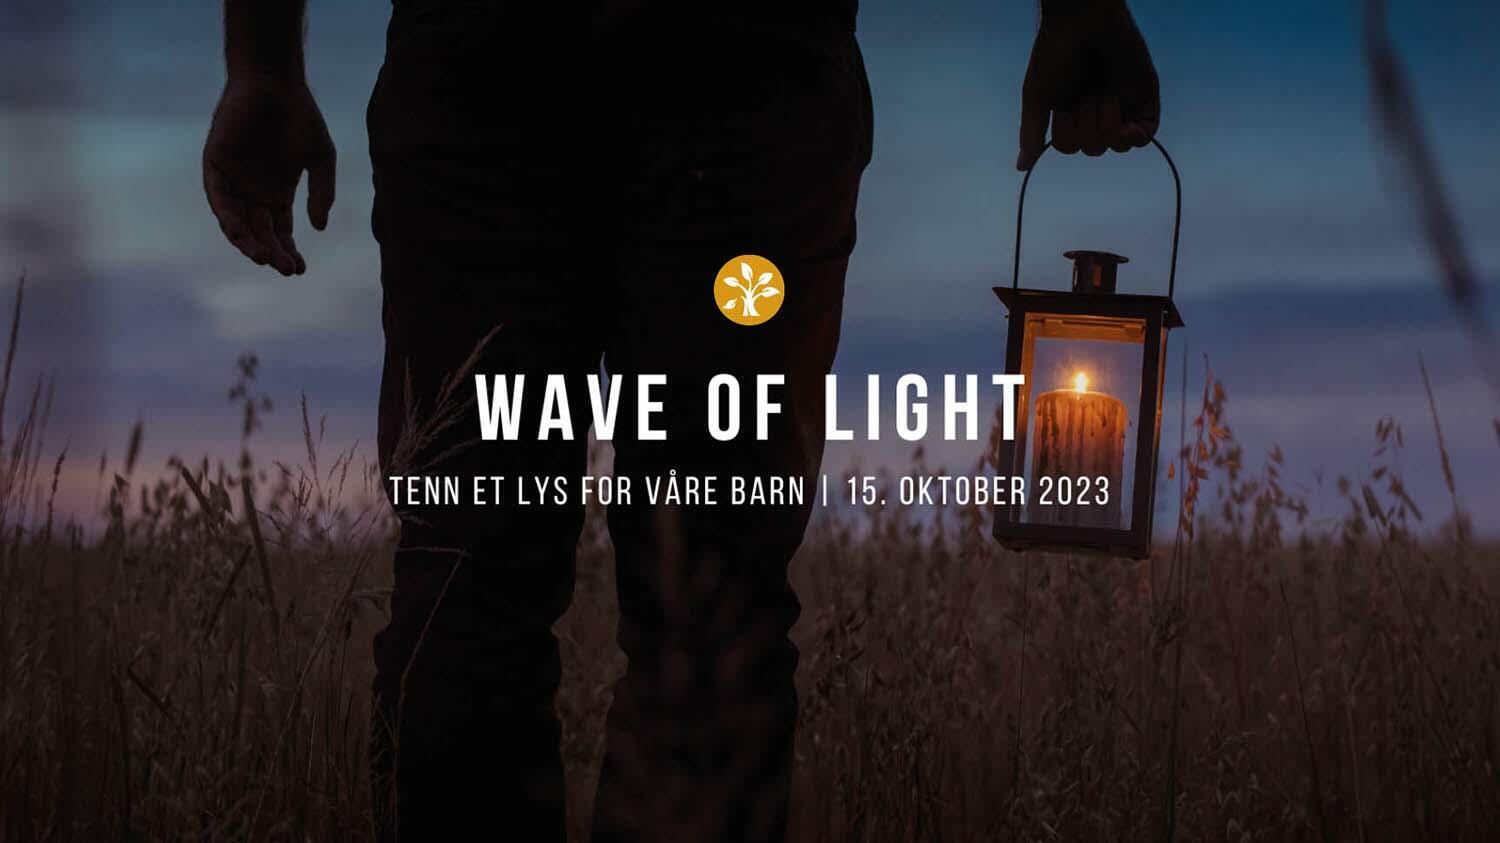 Bilde av mann som bærer lyslykt, med tekst: Wave of Light. Tenn et lys for våre barn - 15. oktober 2023